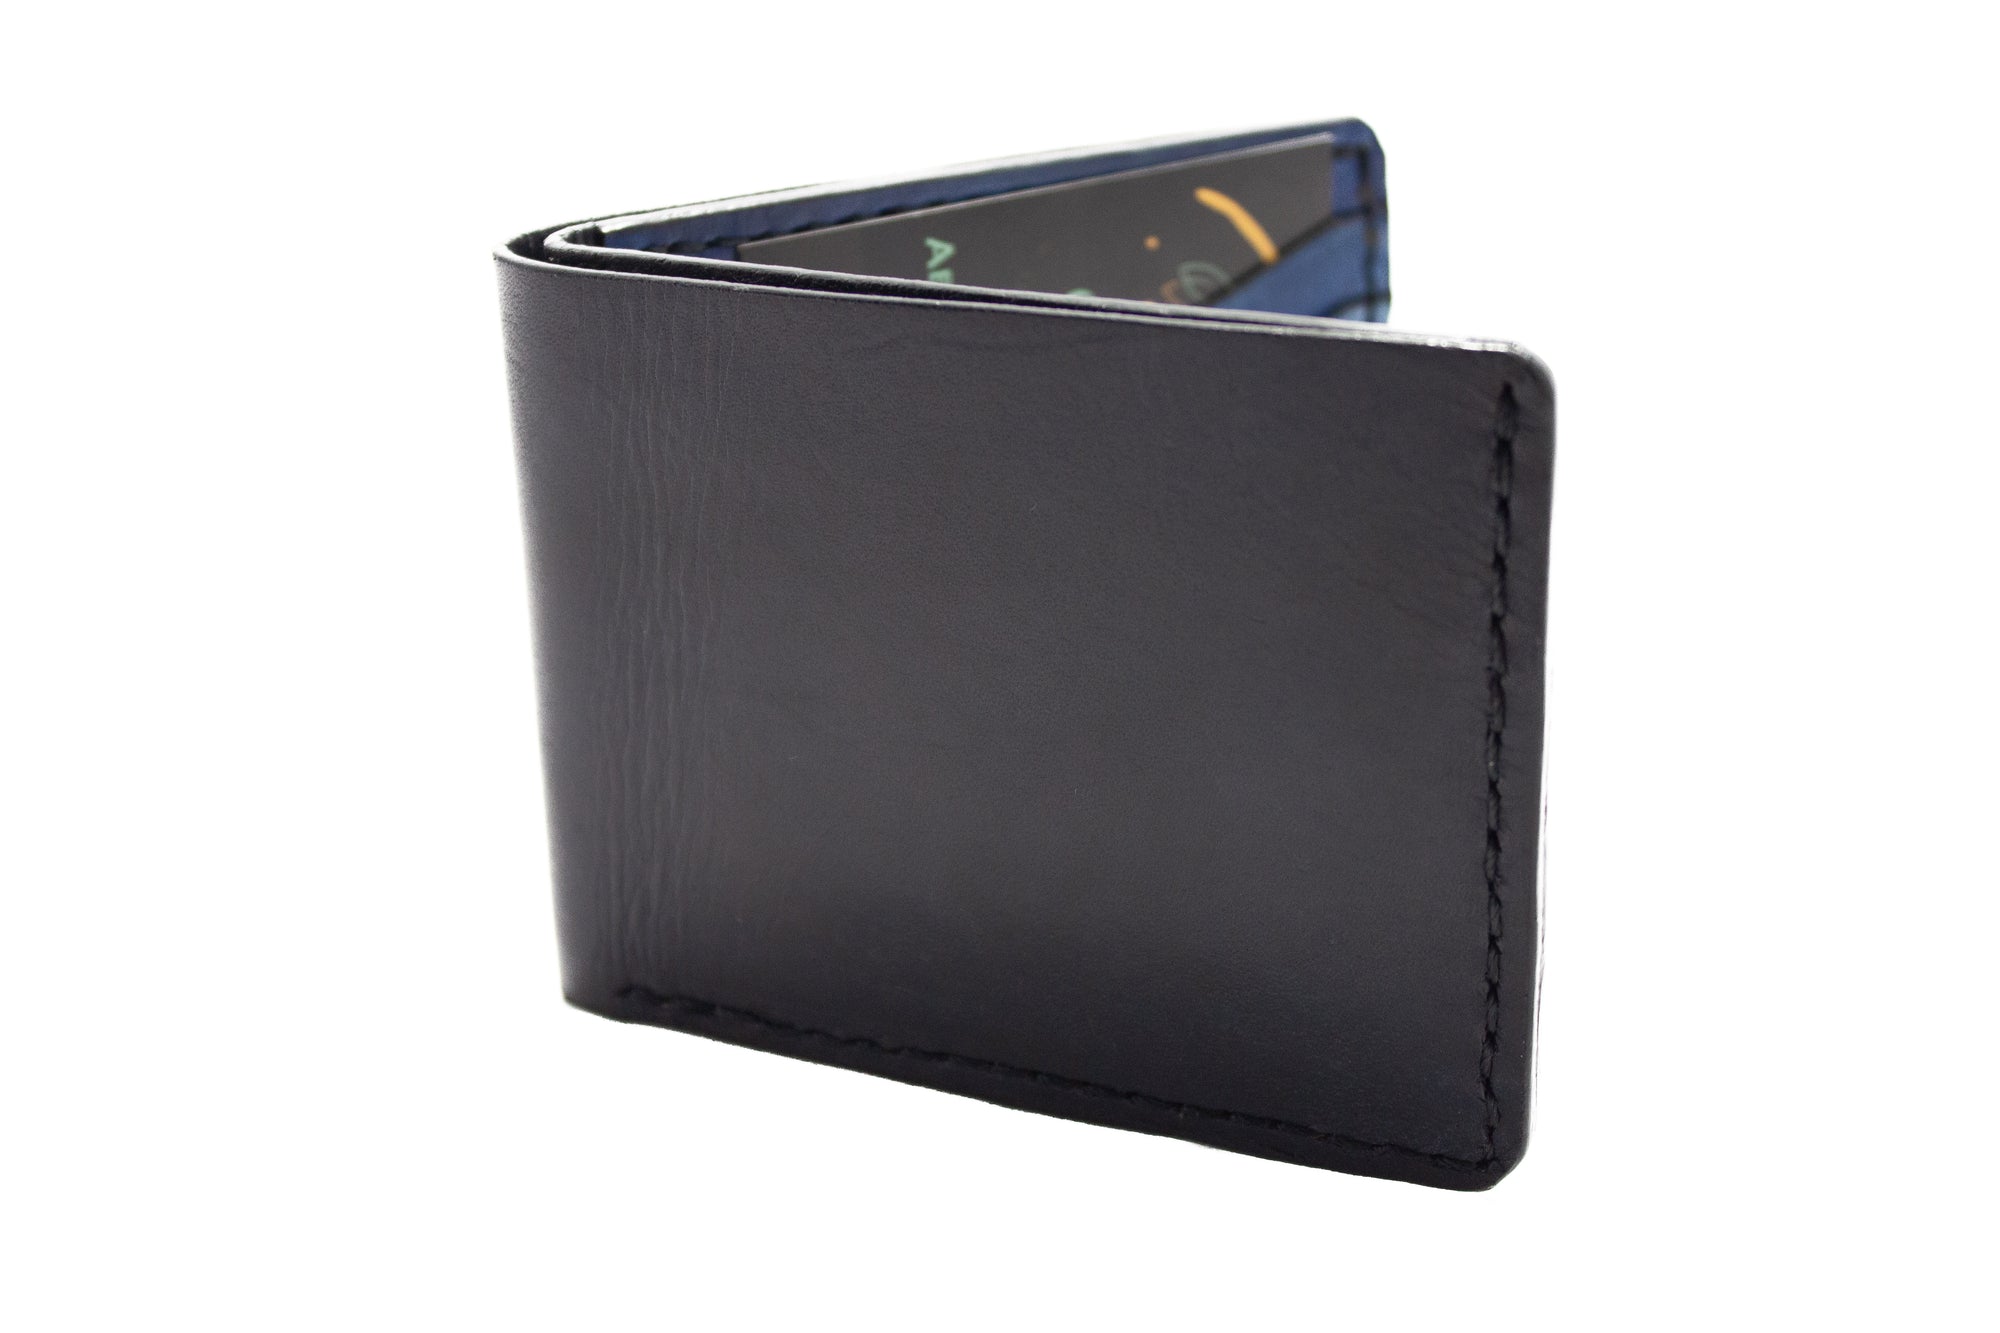 Black & Blue 9 Pocket Wallet